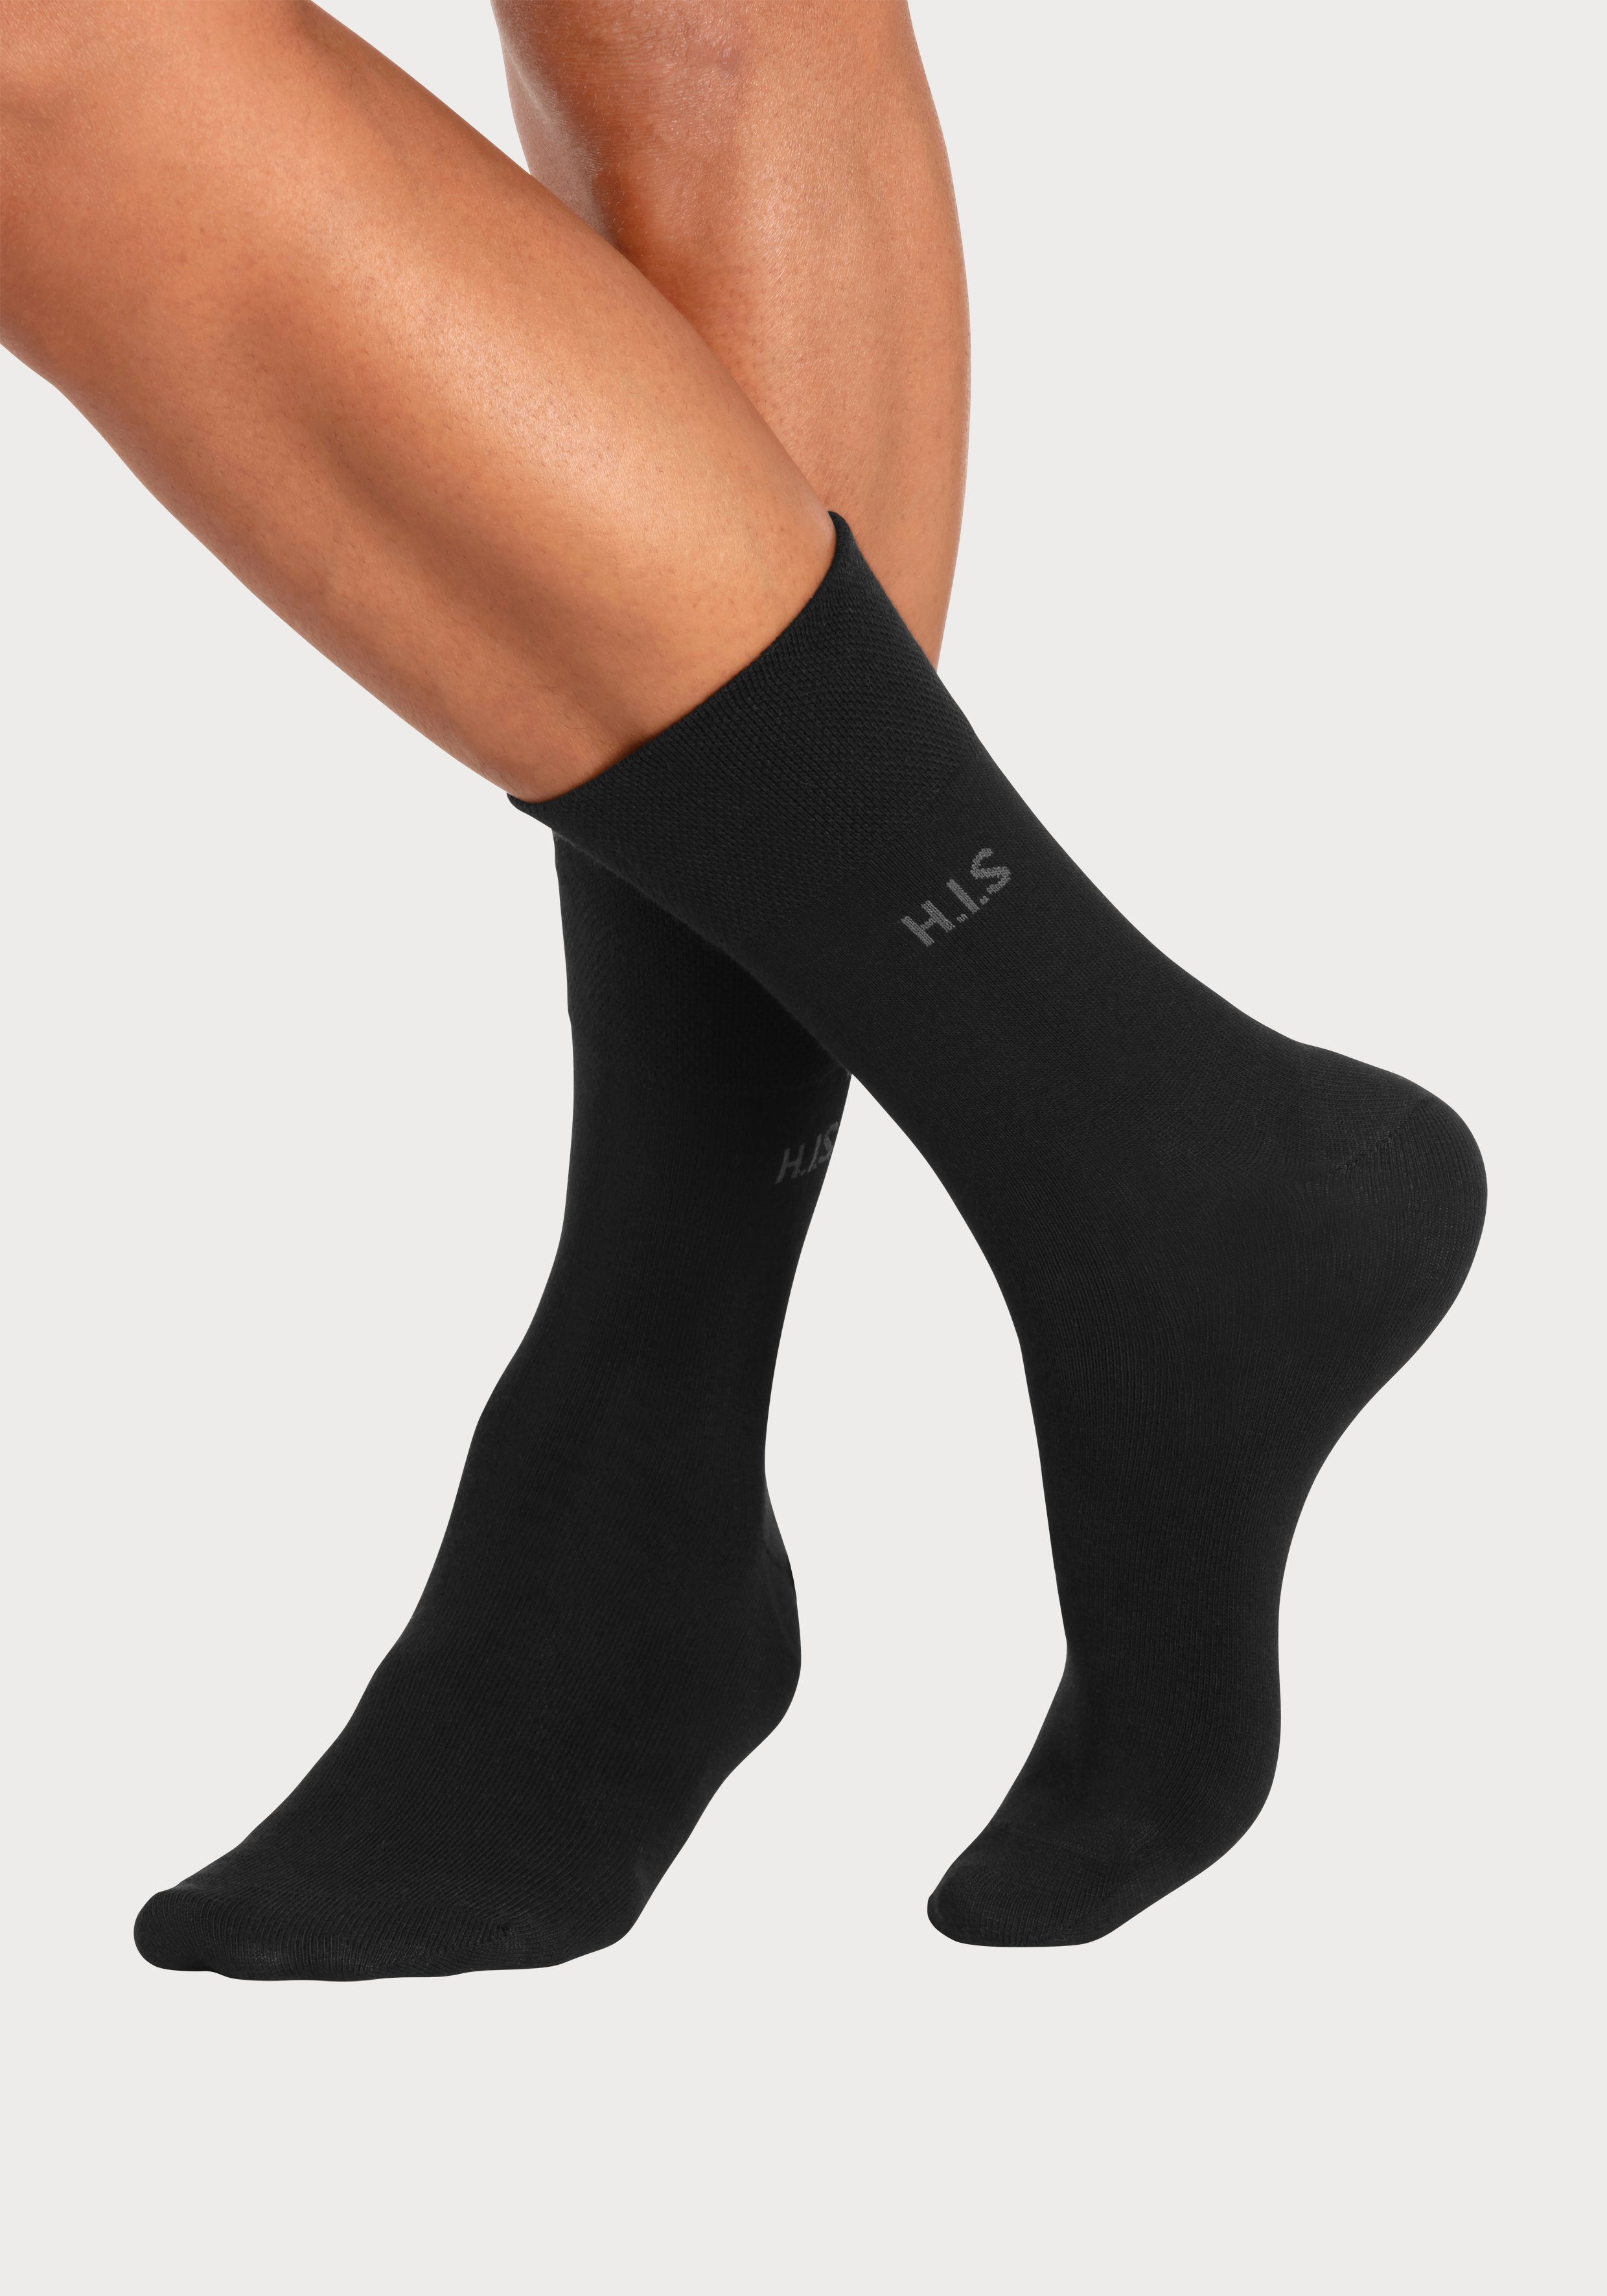 Gummi Socken H.I.S 12x einschneidendes (Packung, schwarz ohne 12-Paar)